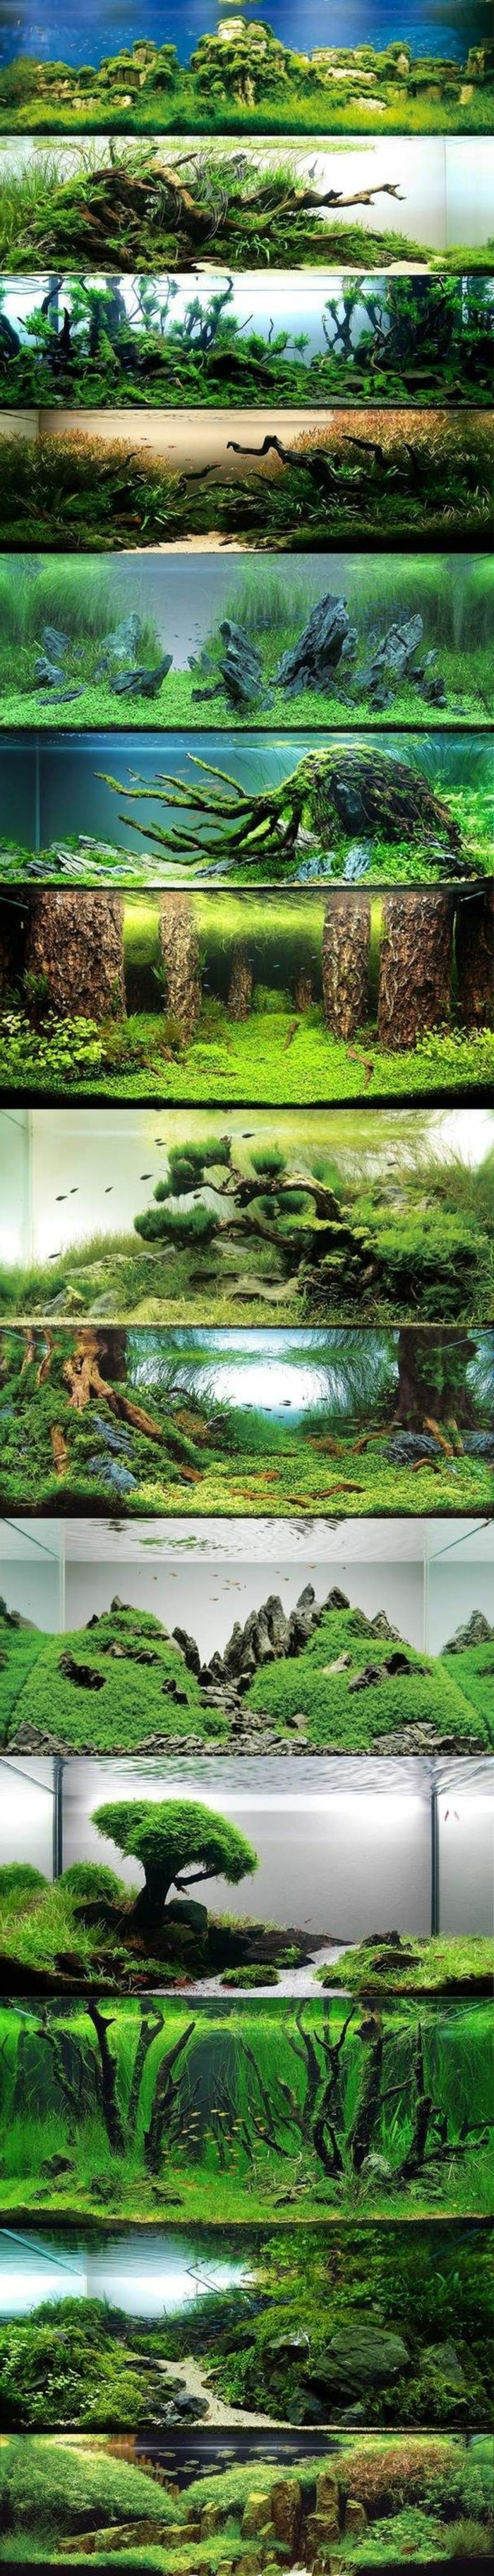 aquarium-design-best-idées-photo collage du monde avec l'eau-algues